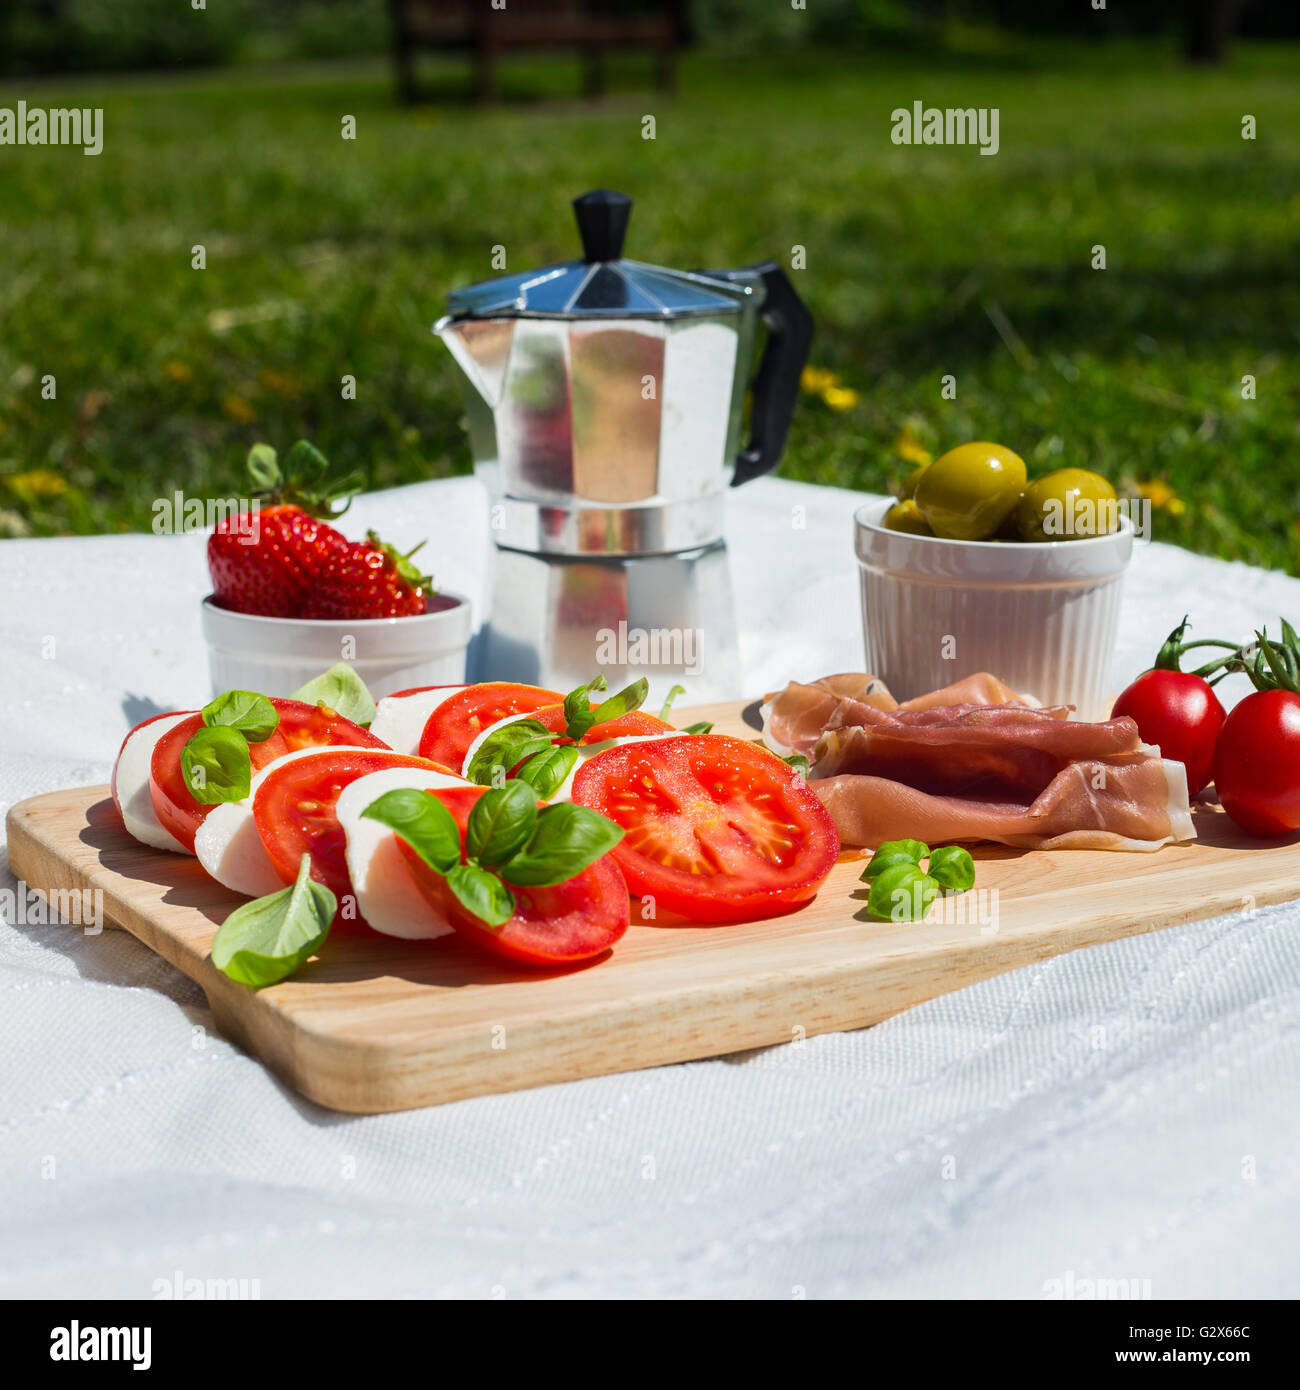 Ein Picknick mit Tomaten und Mozzarella Salat, Parma-Schinken, Erdbeeren, Oliven und Espresso Topf in einem park Stockfoto